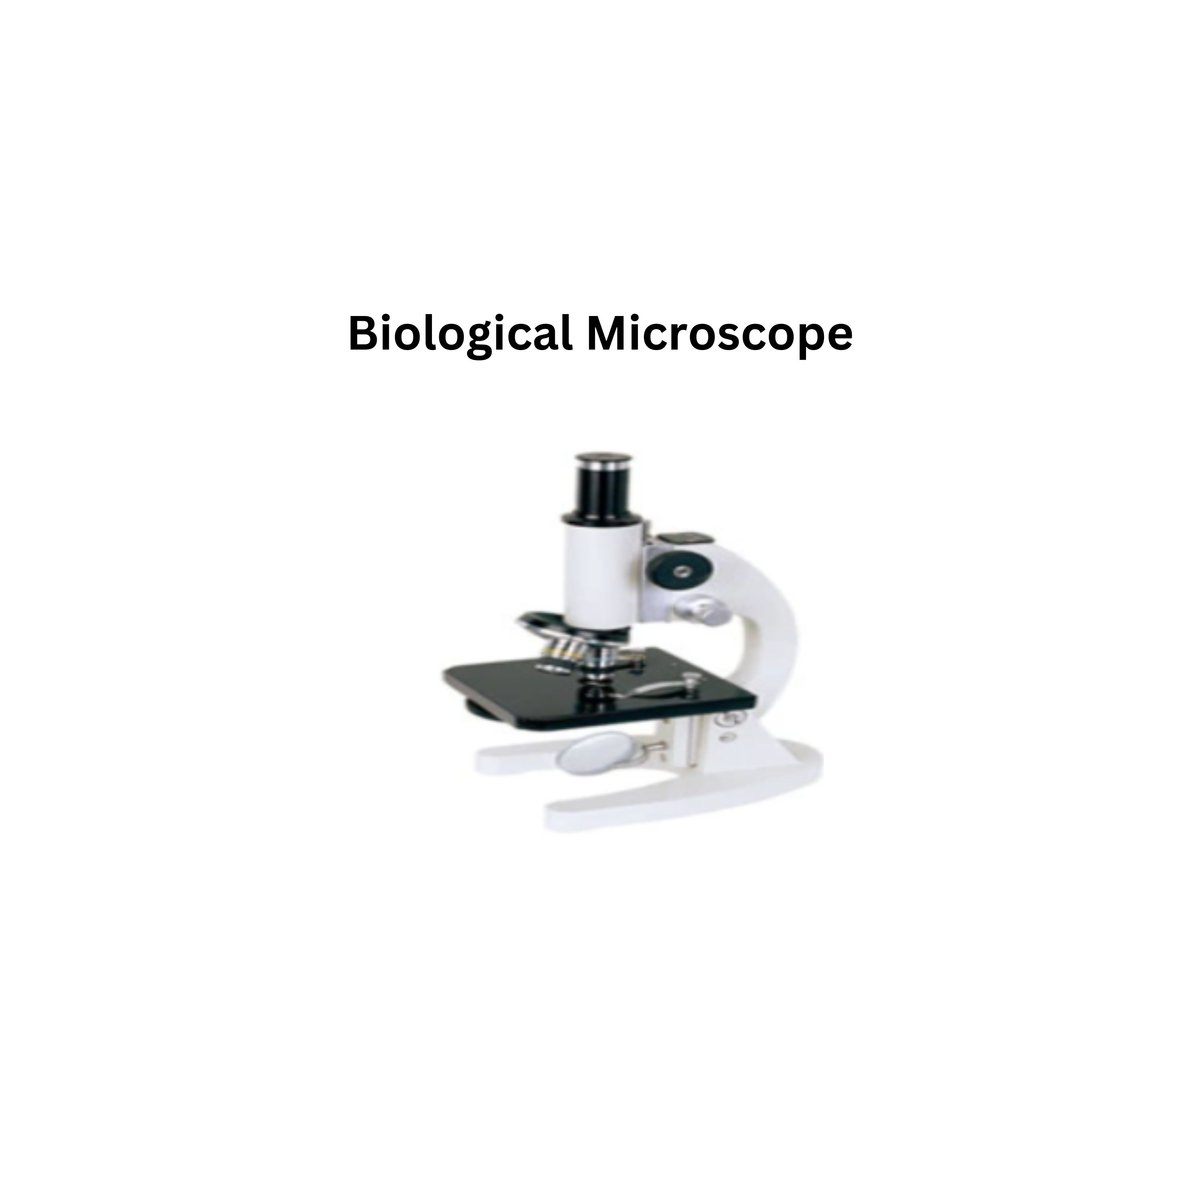 Biological Microscope.jpg